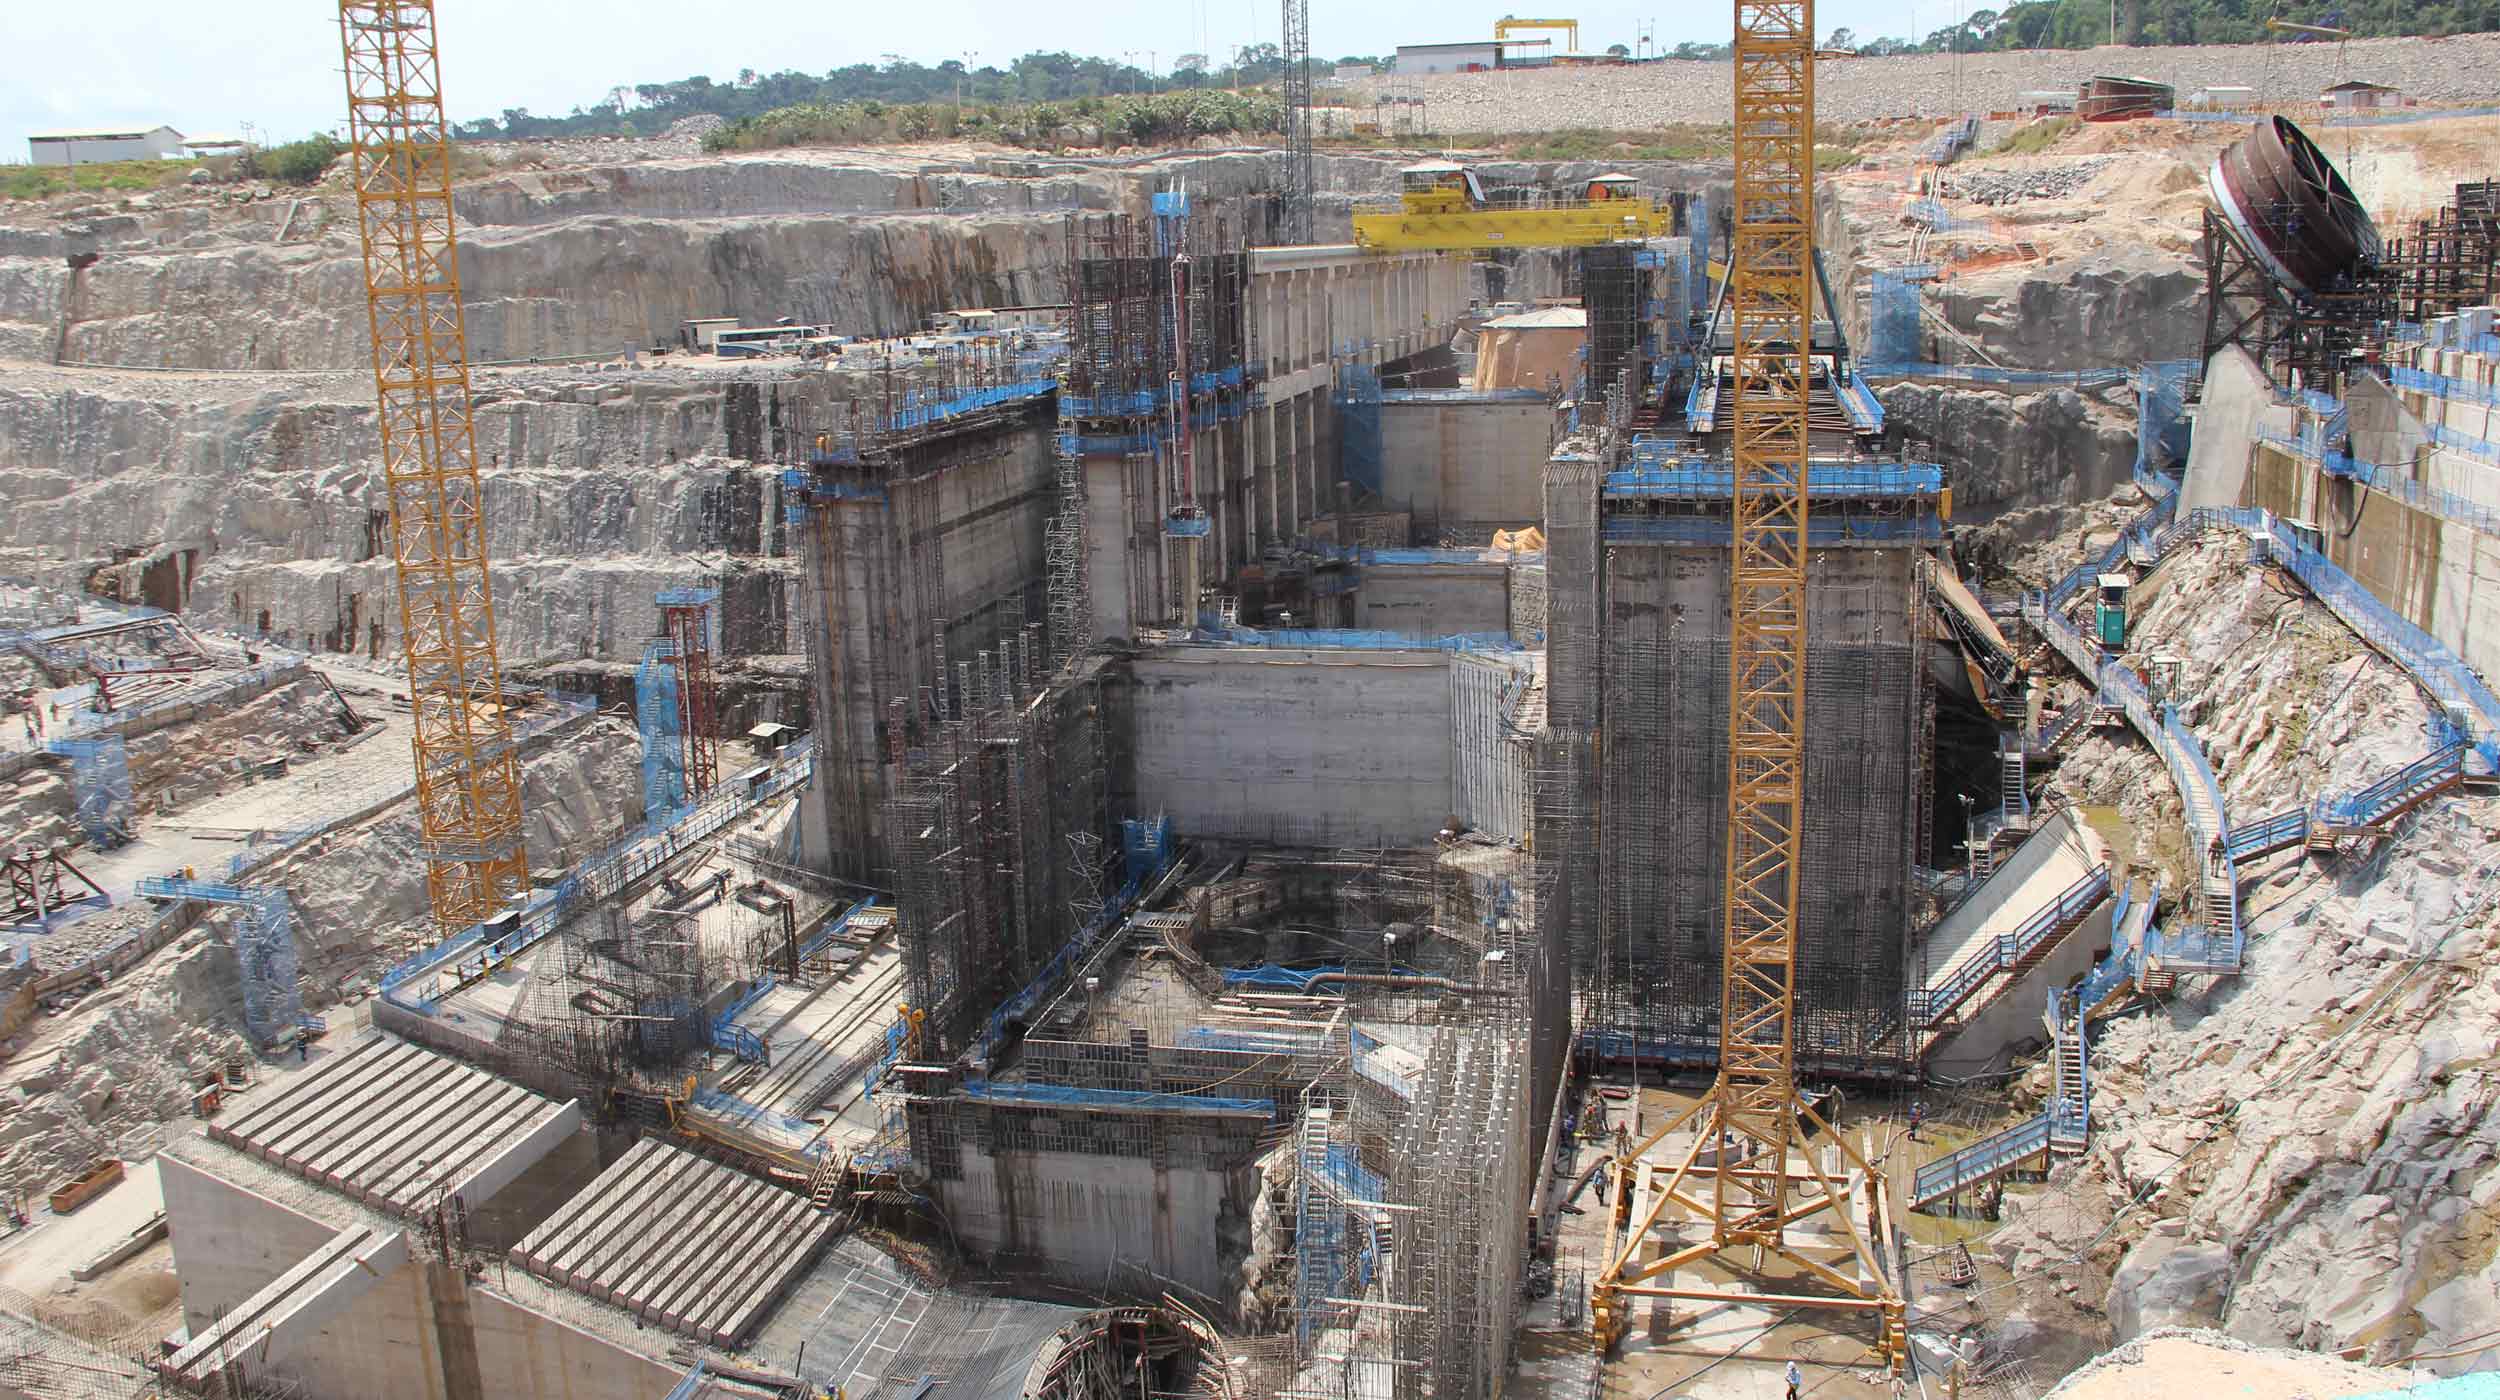 La centrale idroelettrica Teles Pires fa parte del programma infrastrutturale che coinvolge il Piano di Accelerazione della Crescita (PAC) del Governo Federale Brasiliano.